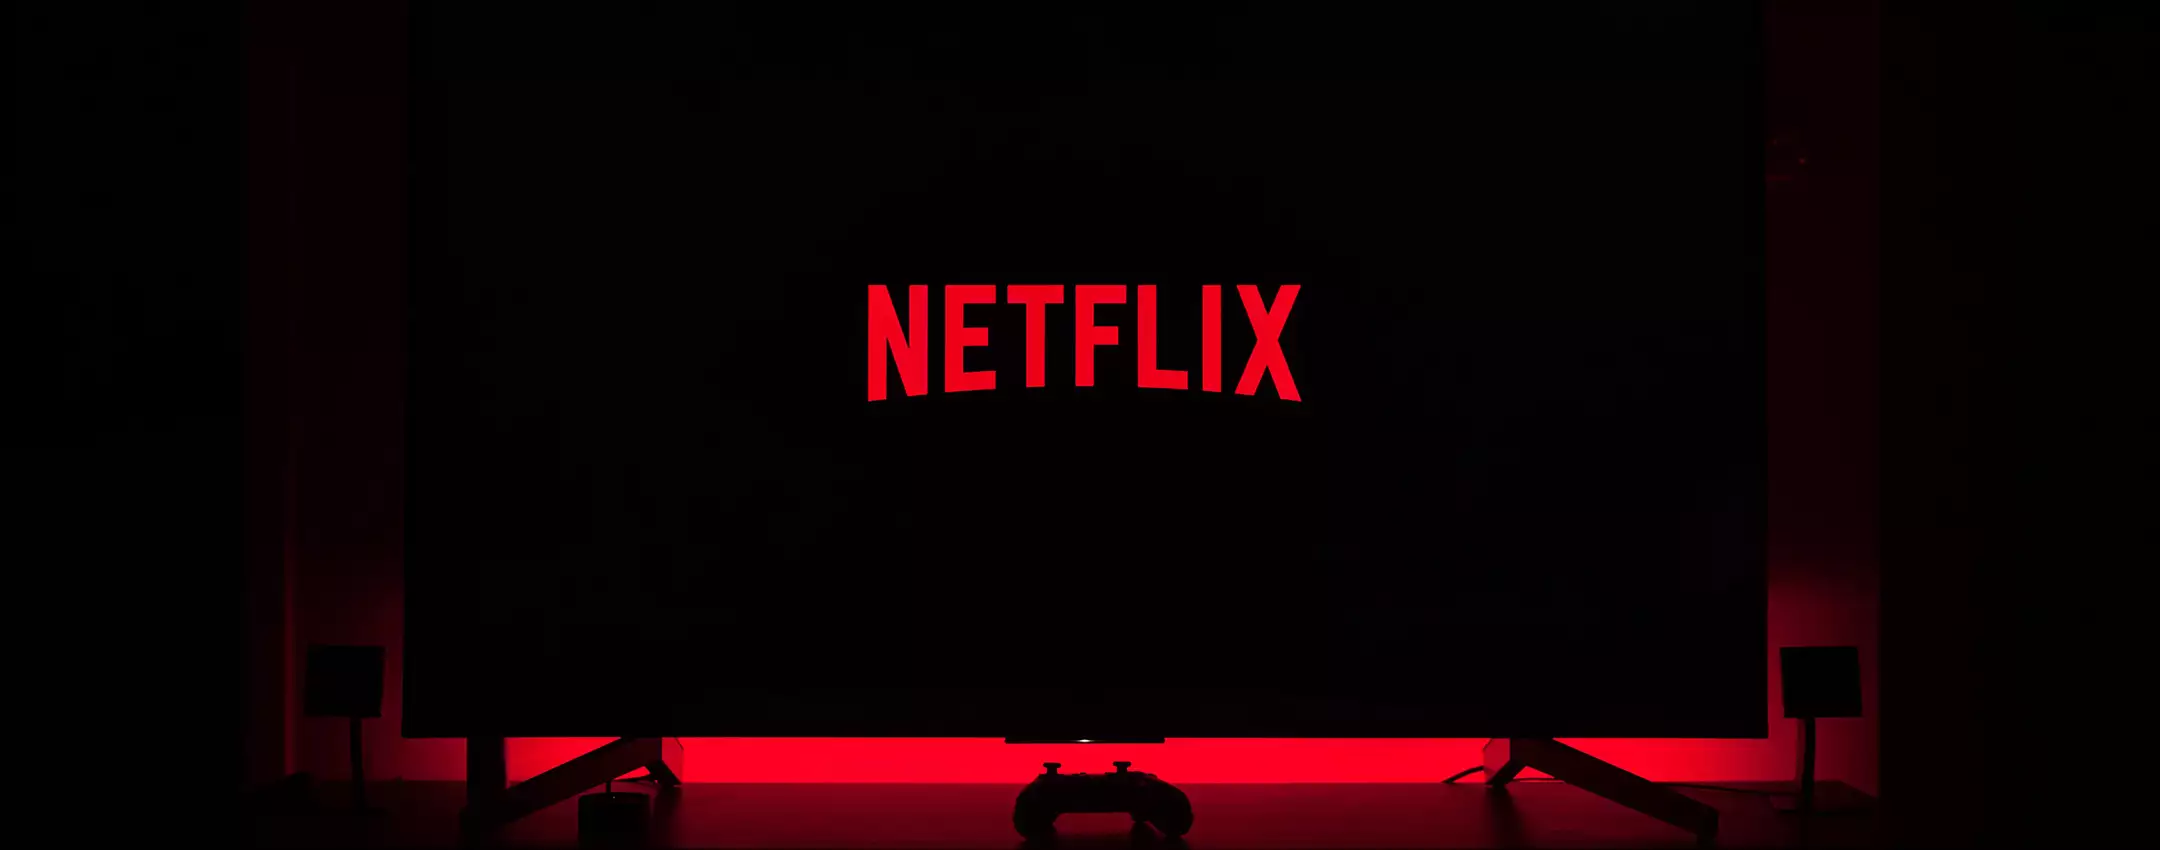 Non sai cosa guardare su Netflix? Ecco i codici segreti di CyberGhost